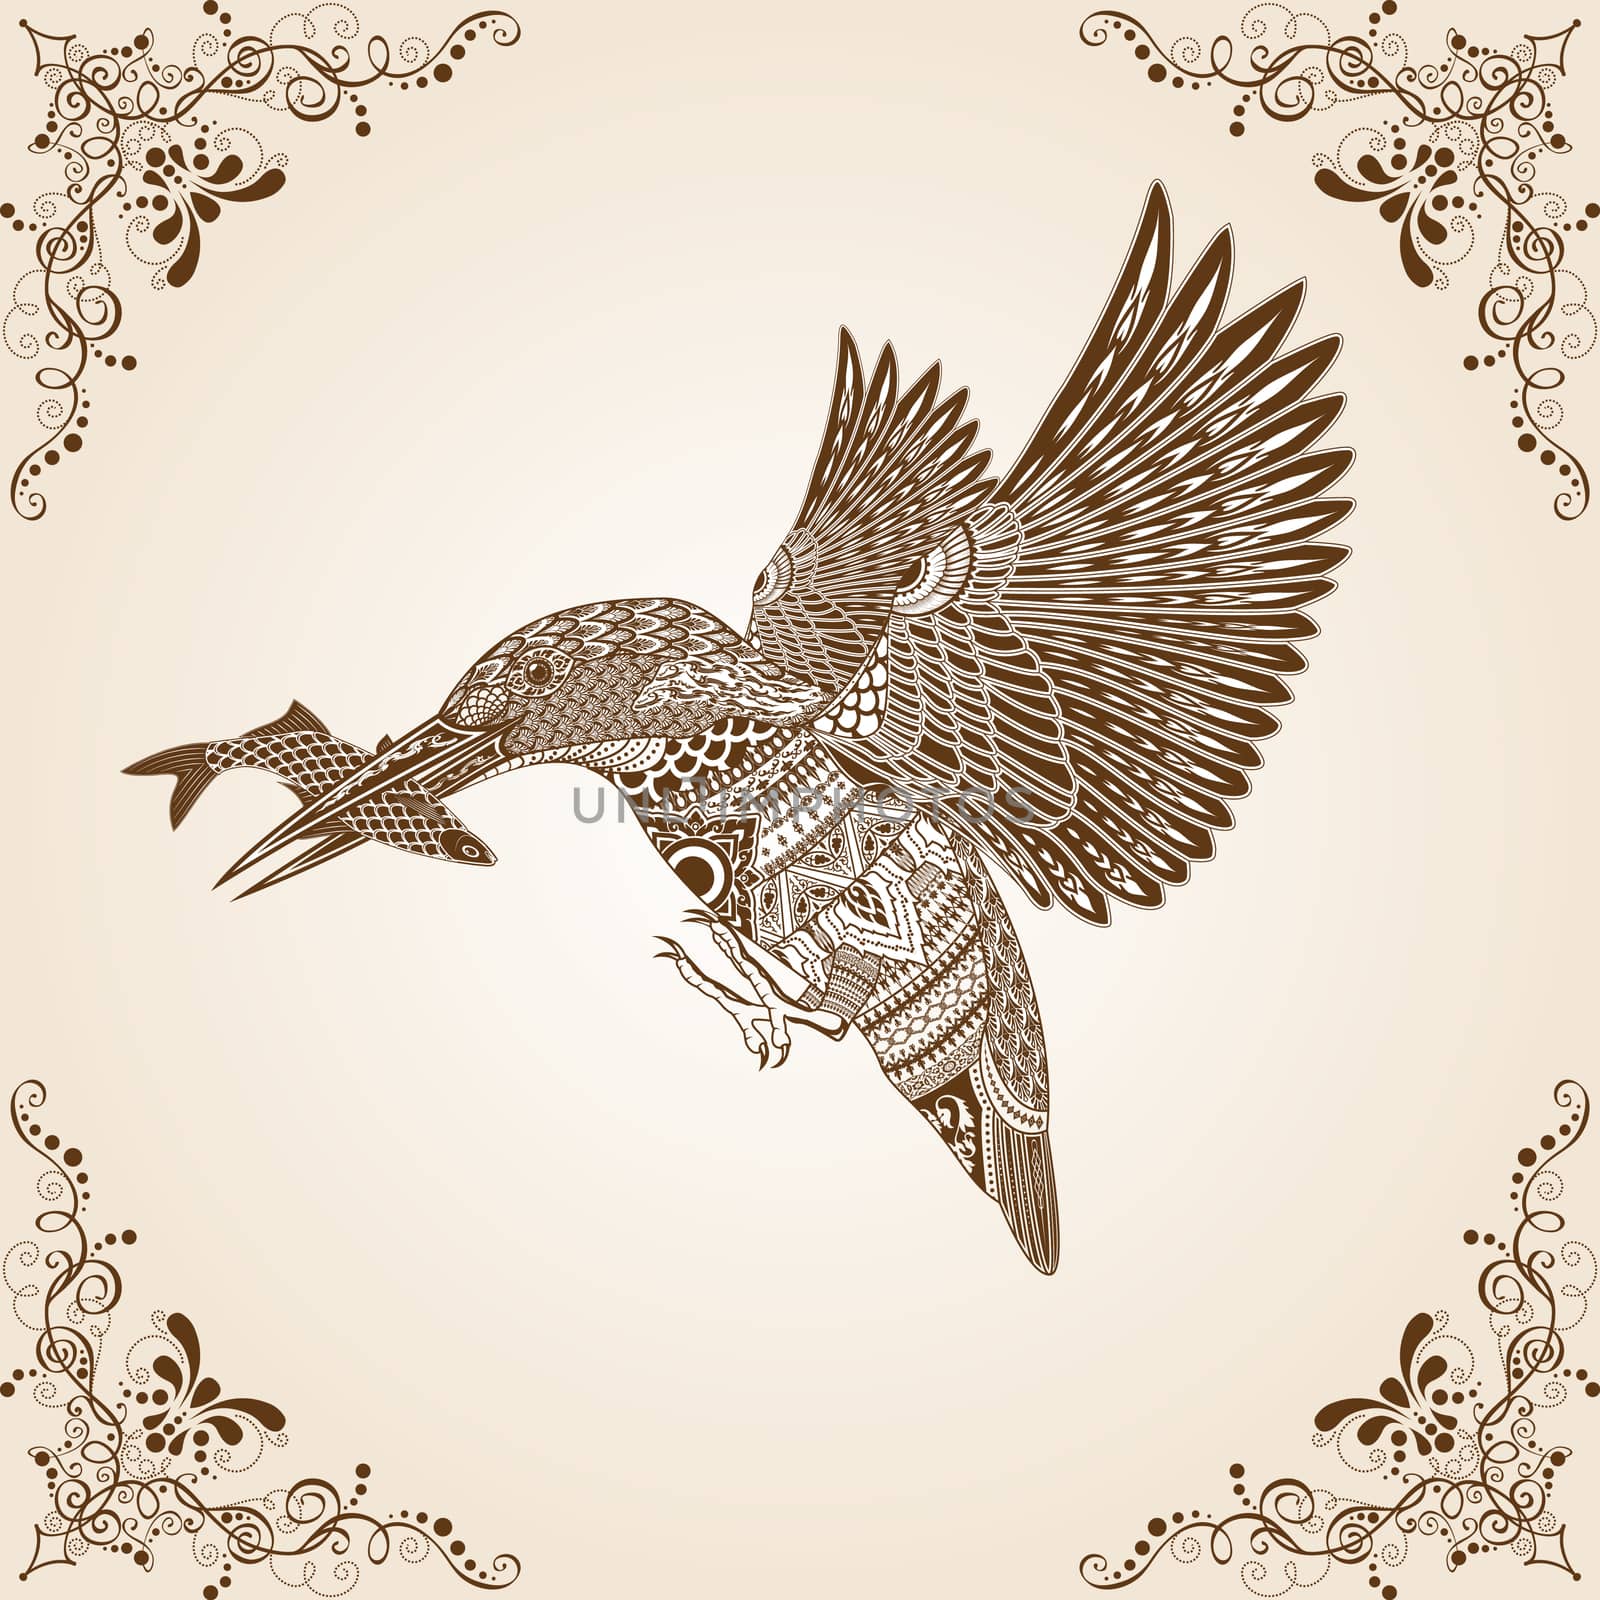 Kingfisher Bird Thai Pattern Vector Illustration,Asian art.